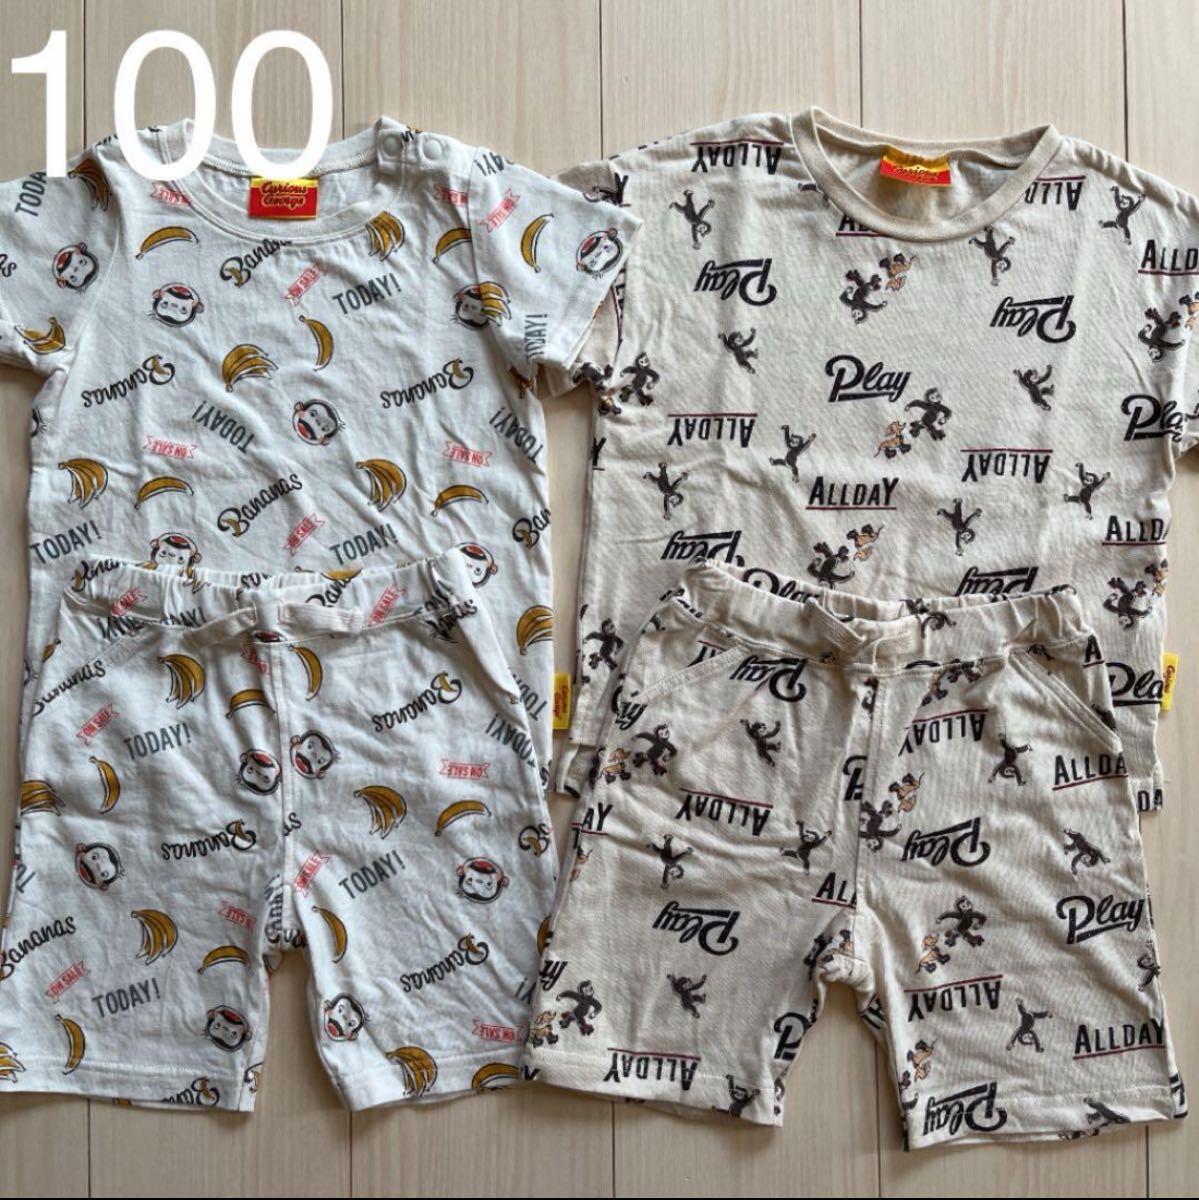 【おさるのジョージ】総柄 セットアップ パジャマ 2セット 100 Tシャツ ハーフパンツ 猿 サル 動物 バナナ キャラクター